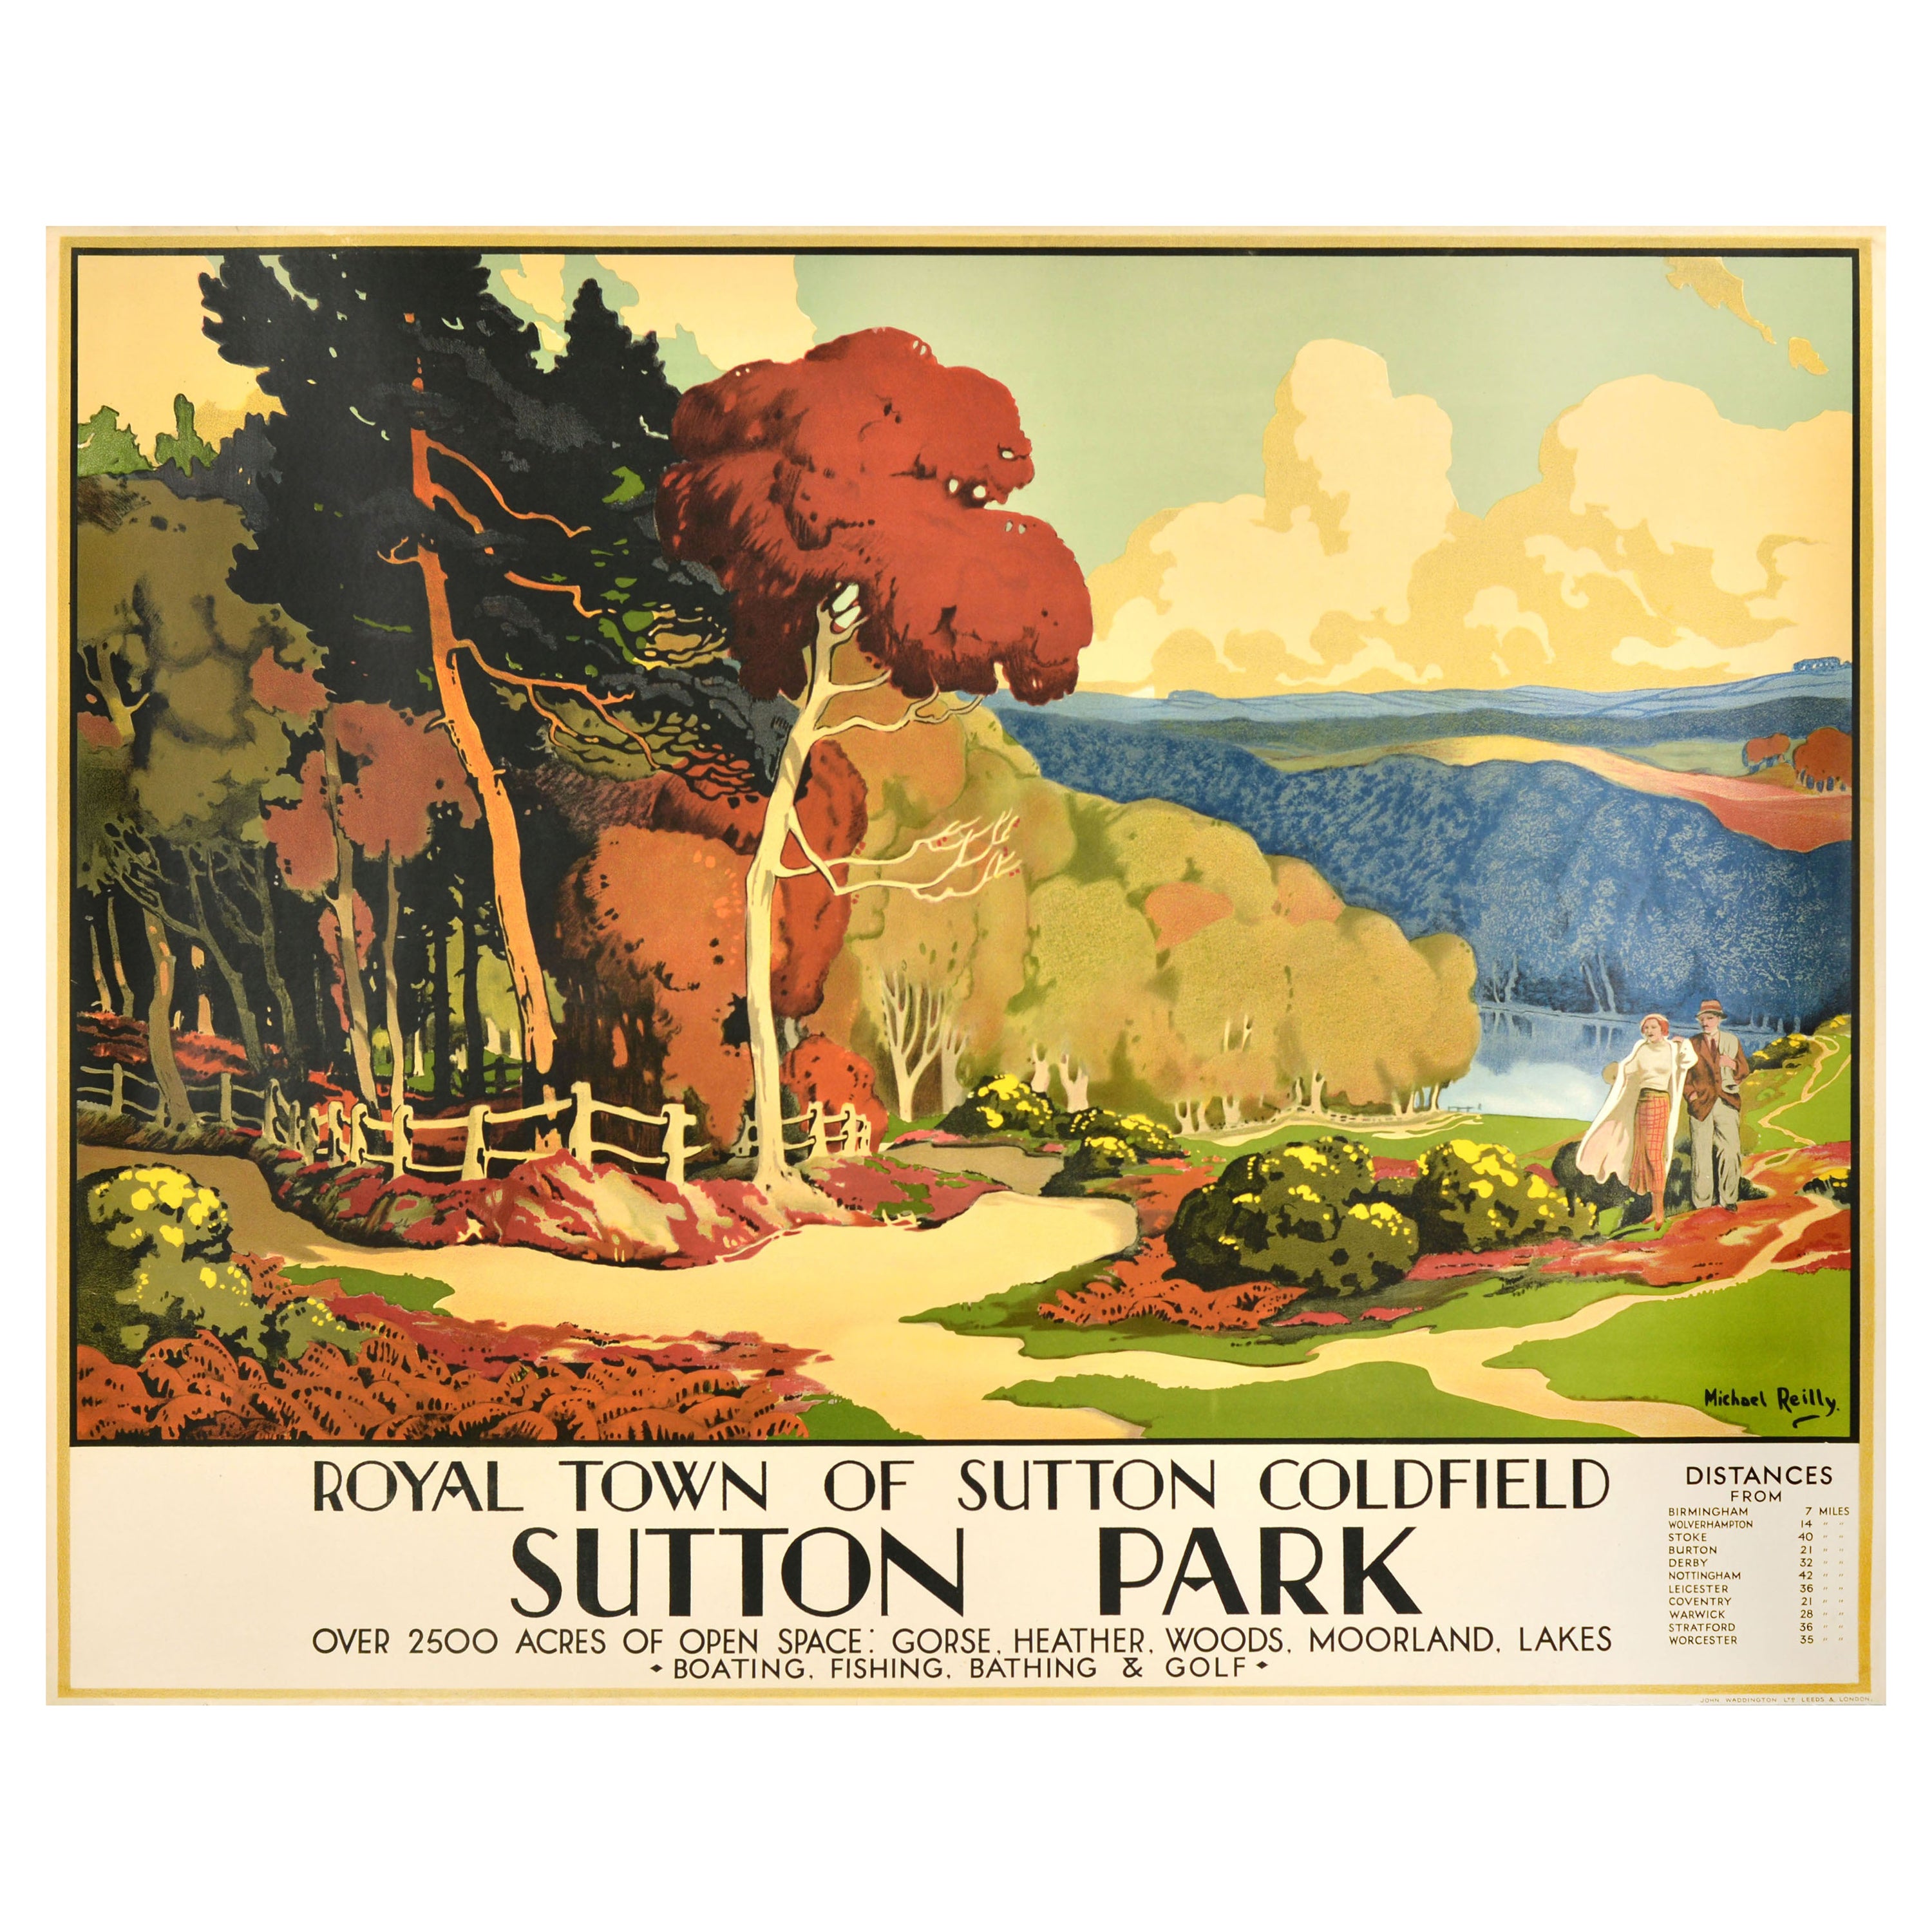 Original Vintage Travel Poster Royal Town Of Sutton Coldfield Sutton Park UK Art